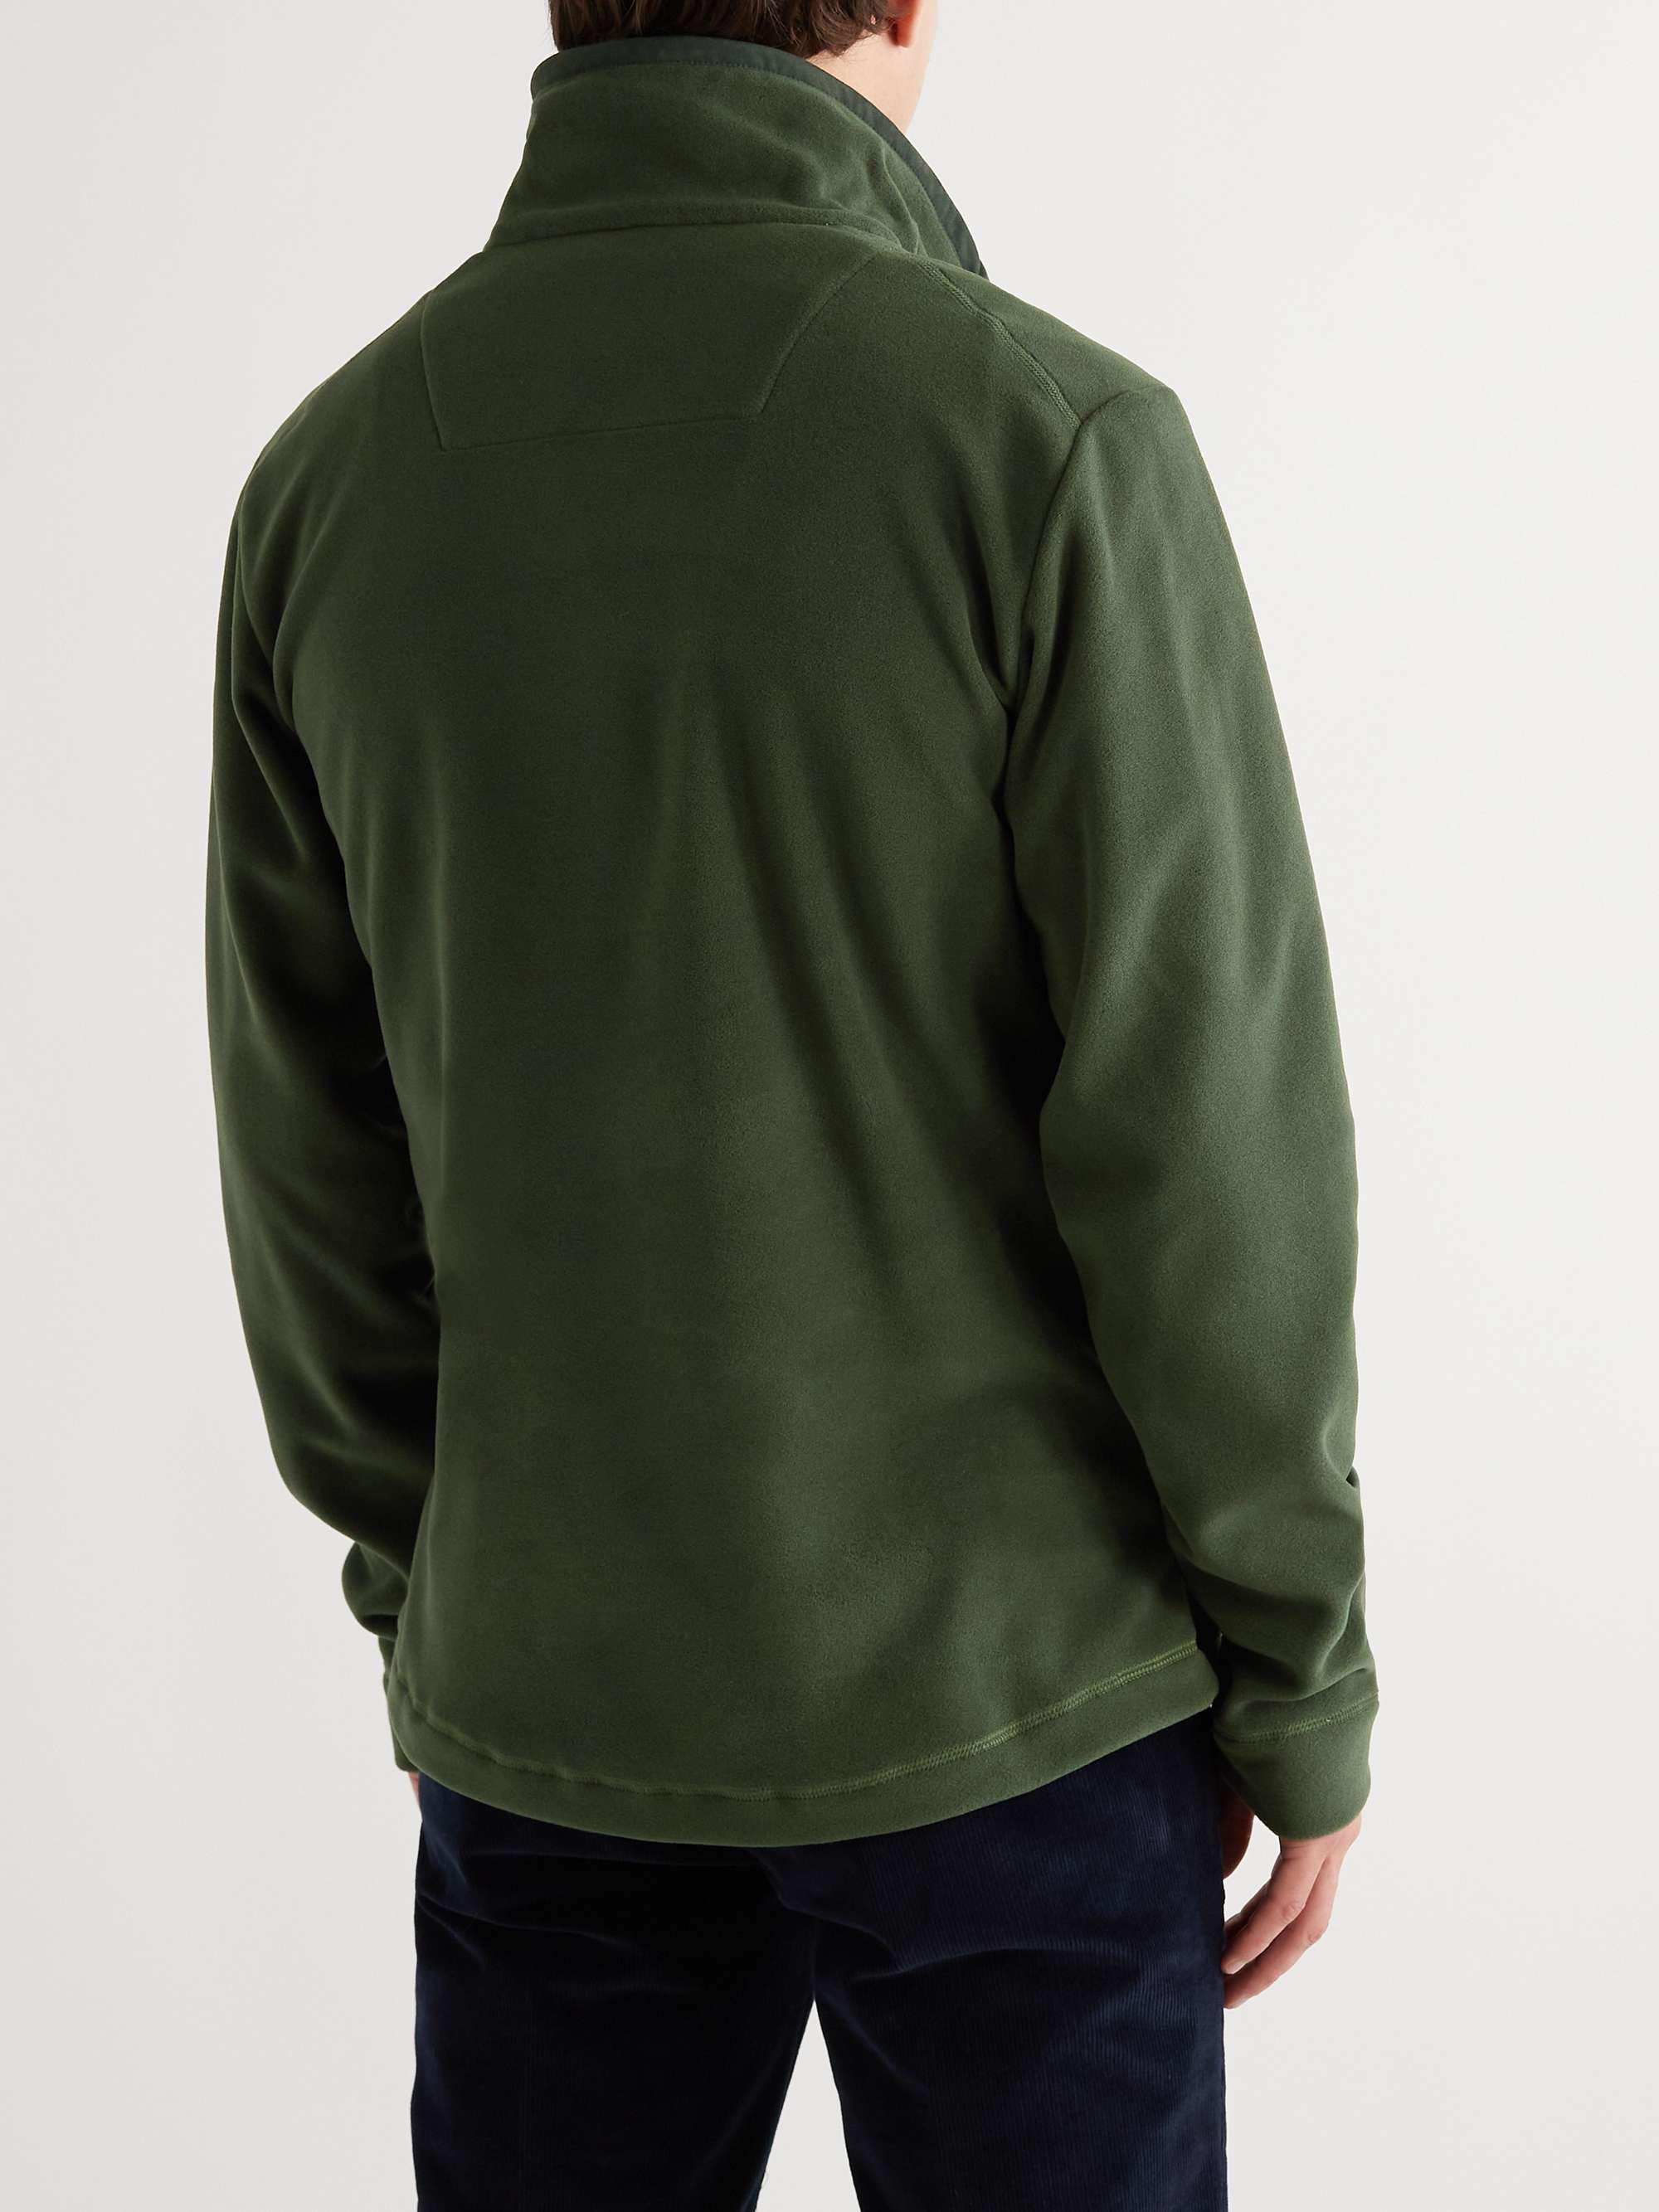 PURDEY Fleece Half-Zip Sweater